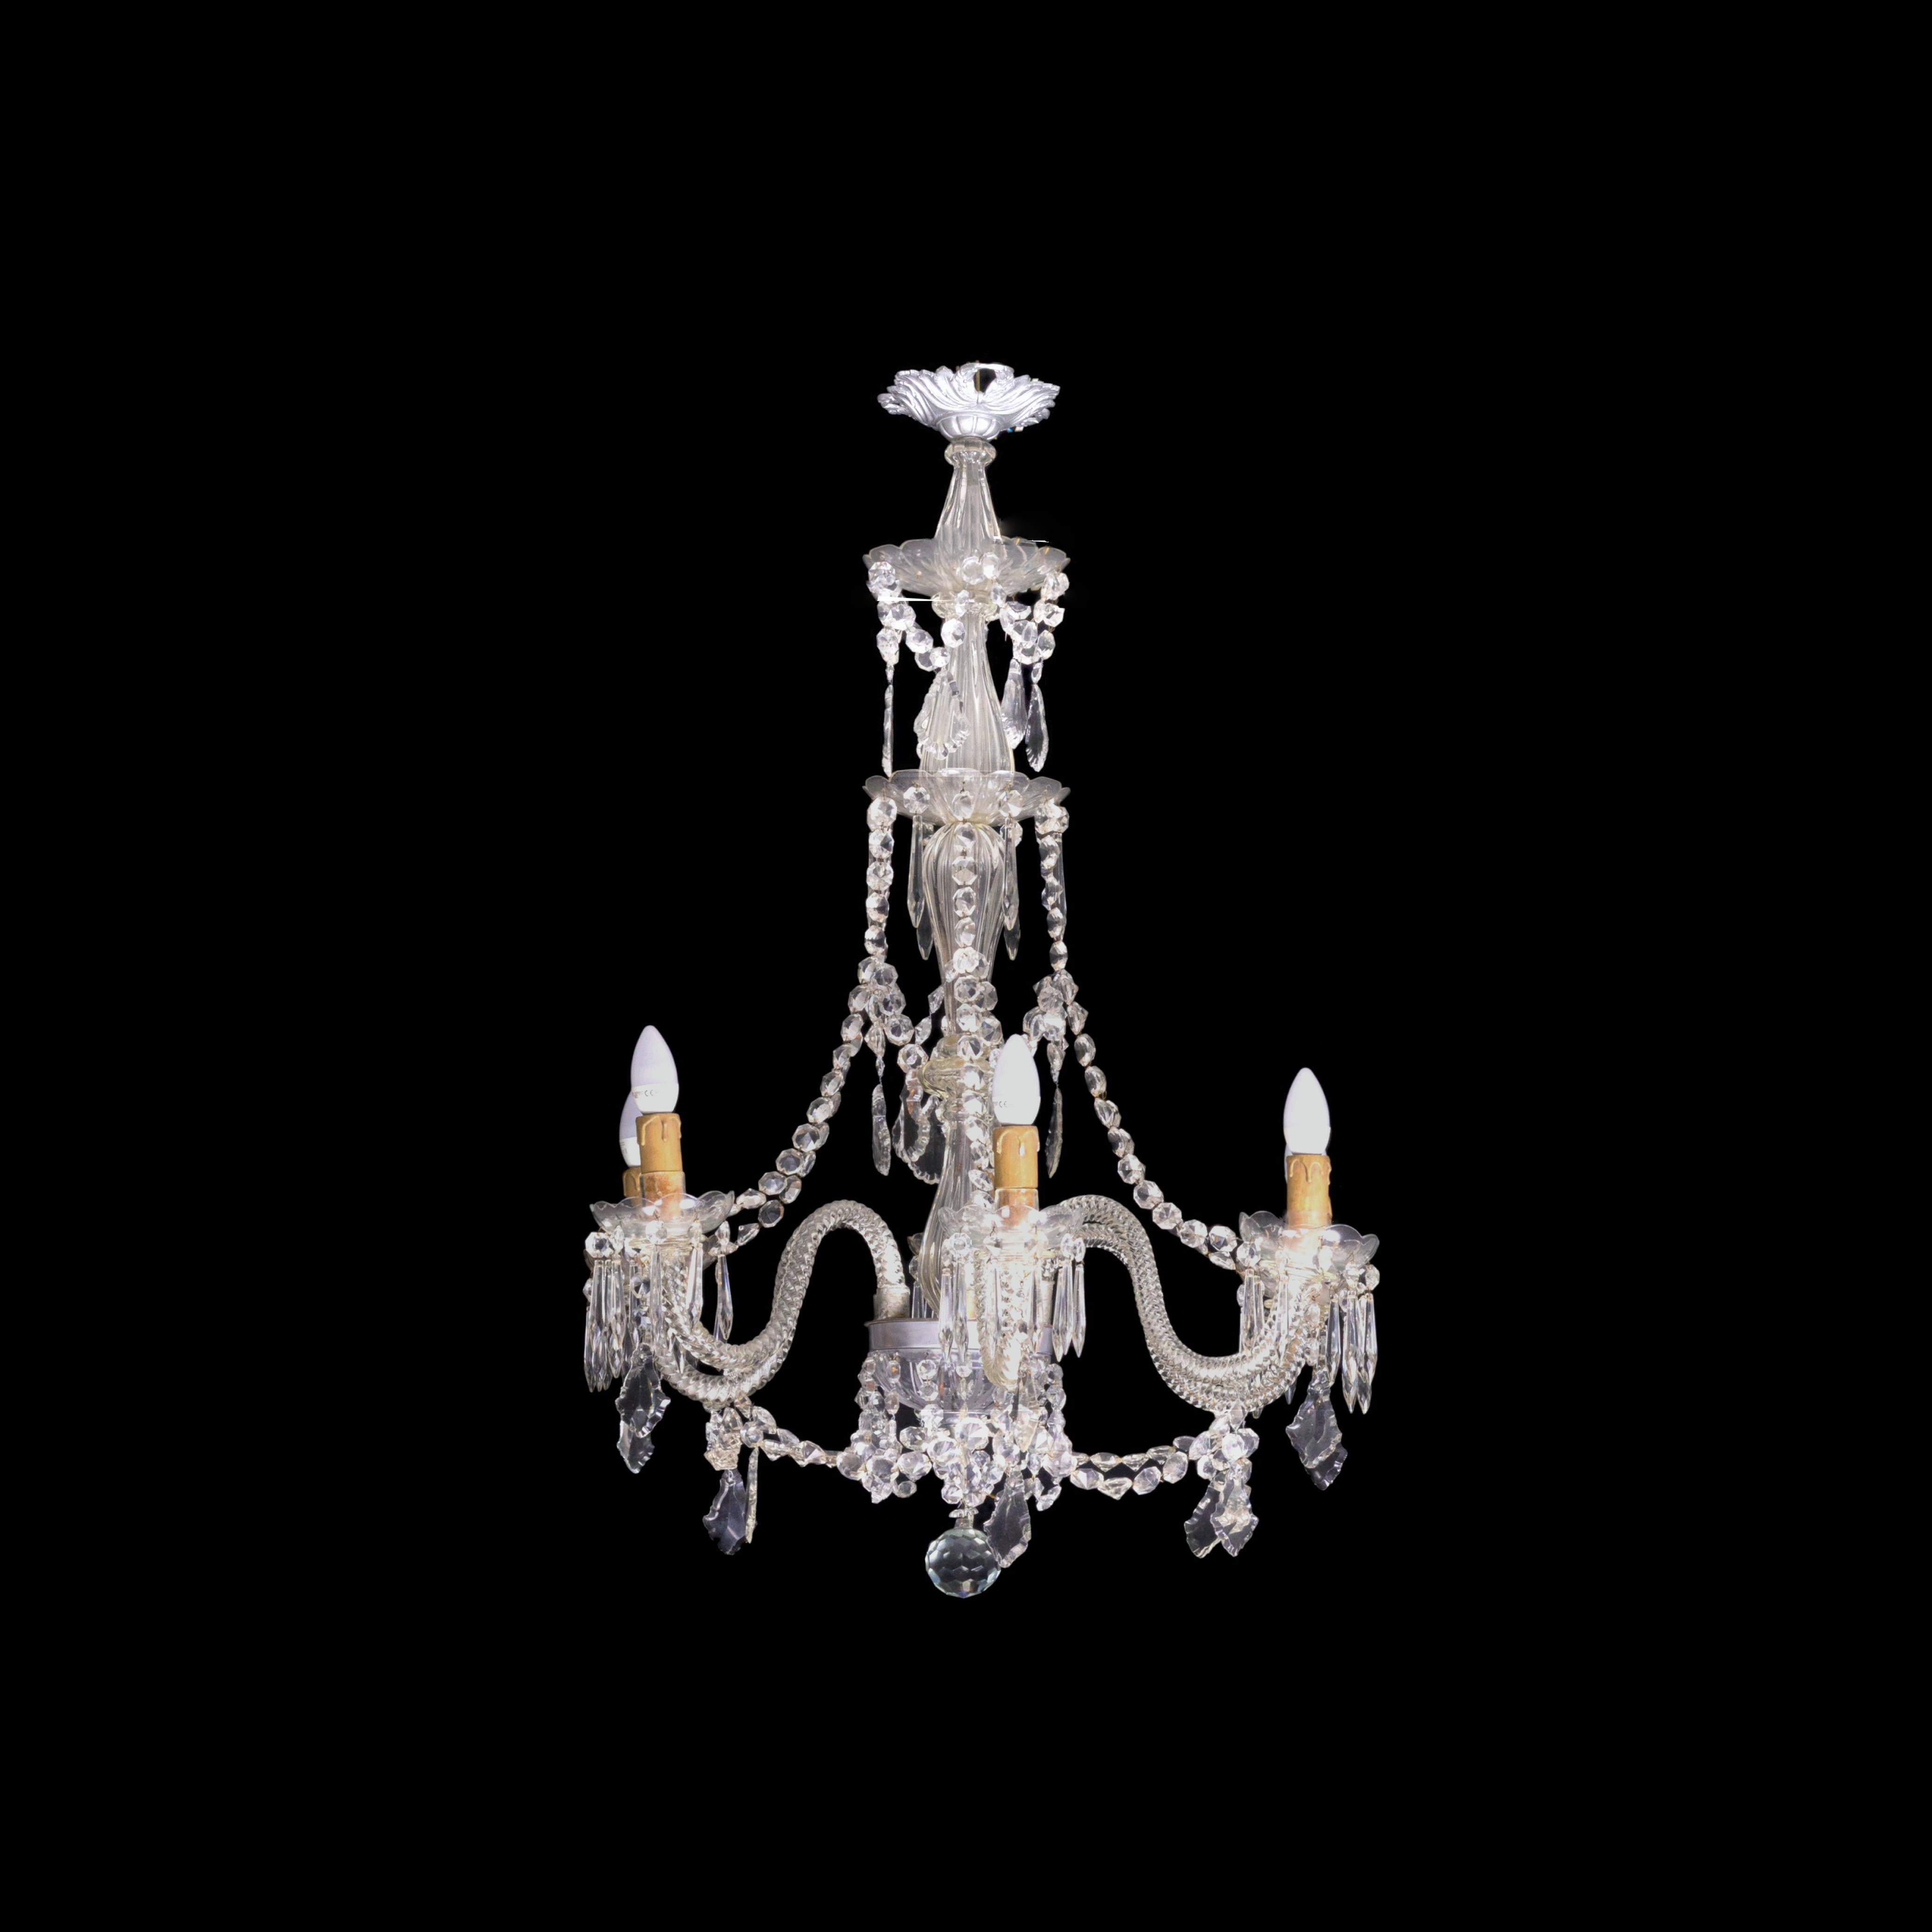 Diese exquisite Kronleuchterlampe zeigt die Eleganz des Murano-Stils mit ihren sechs Armen, der Bronzestruktur und den atemberaubenden Kristallen und dem hängenden Glas. Es wurde kürzlich überprüft und befindet sich in einem einwandfreien